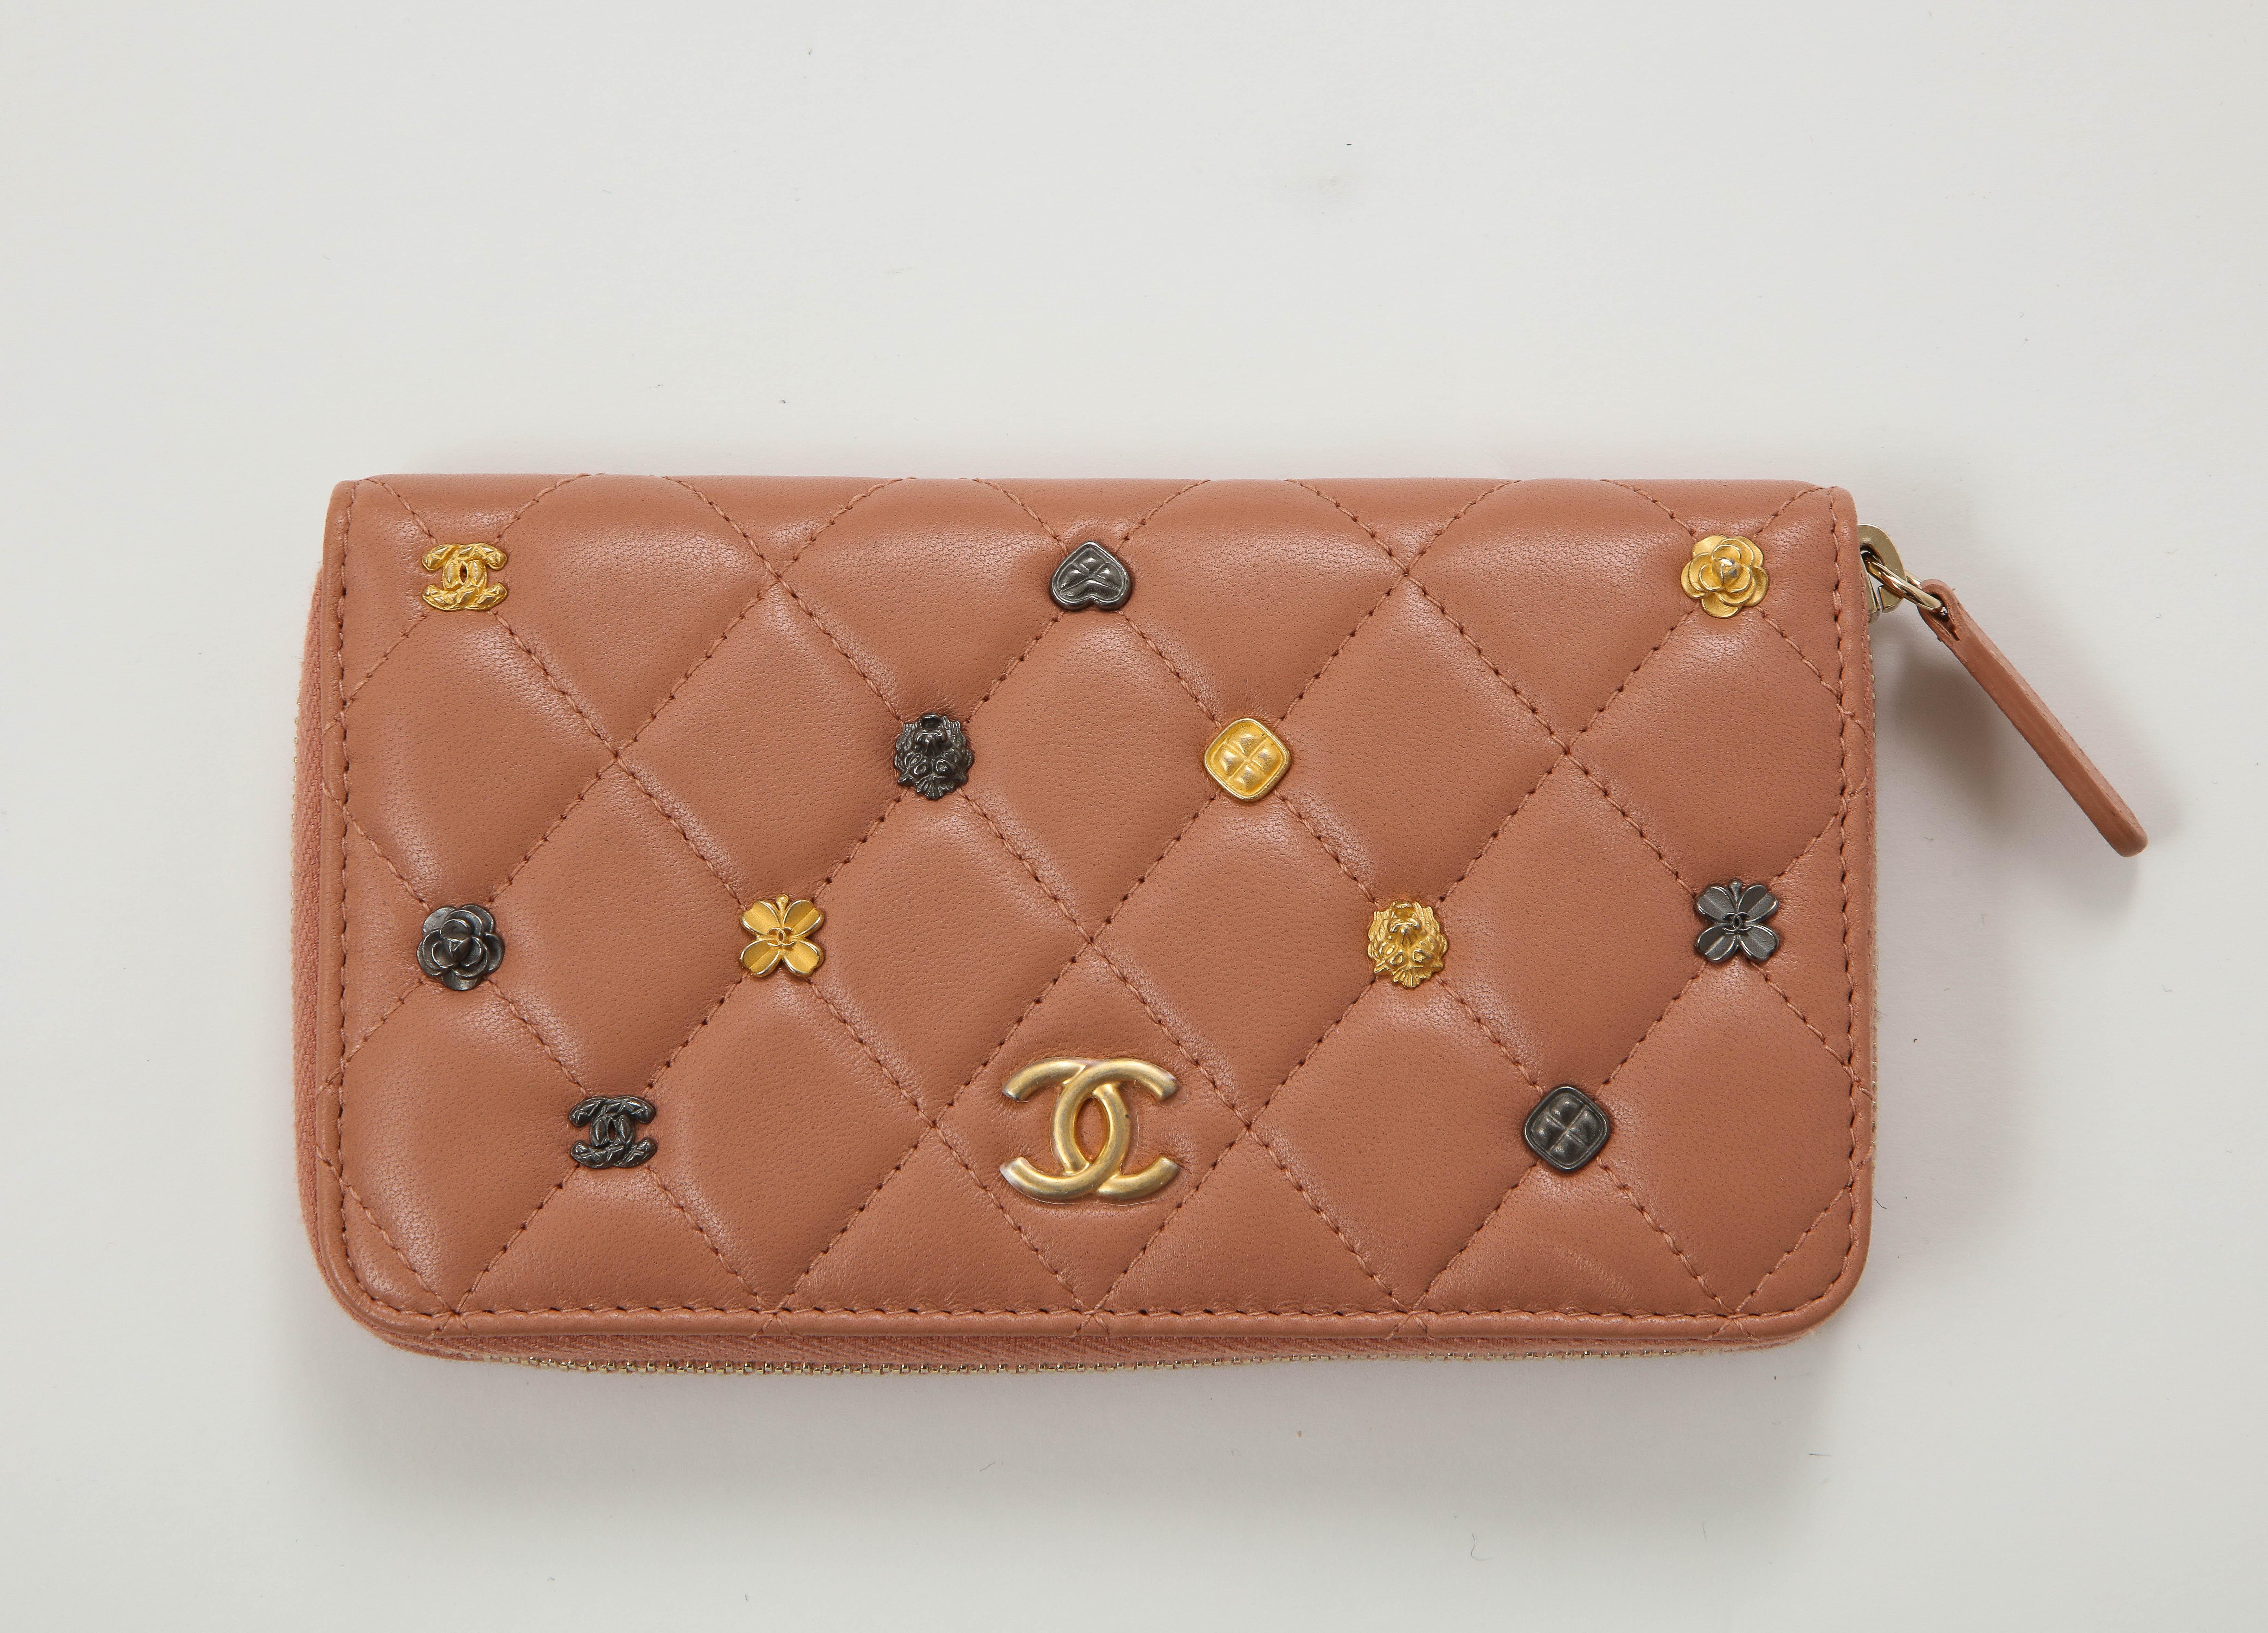 Portefeuille iconique matelassé en cuir d'agneau rose avec des charmes Chanel miniatures sur le devant. 2 compartiments avec une poche centrale zippée. Neuf, jamais porté, livré avec boîte et sac de rangement.